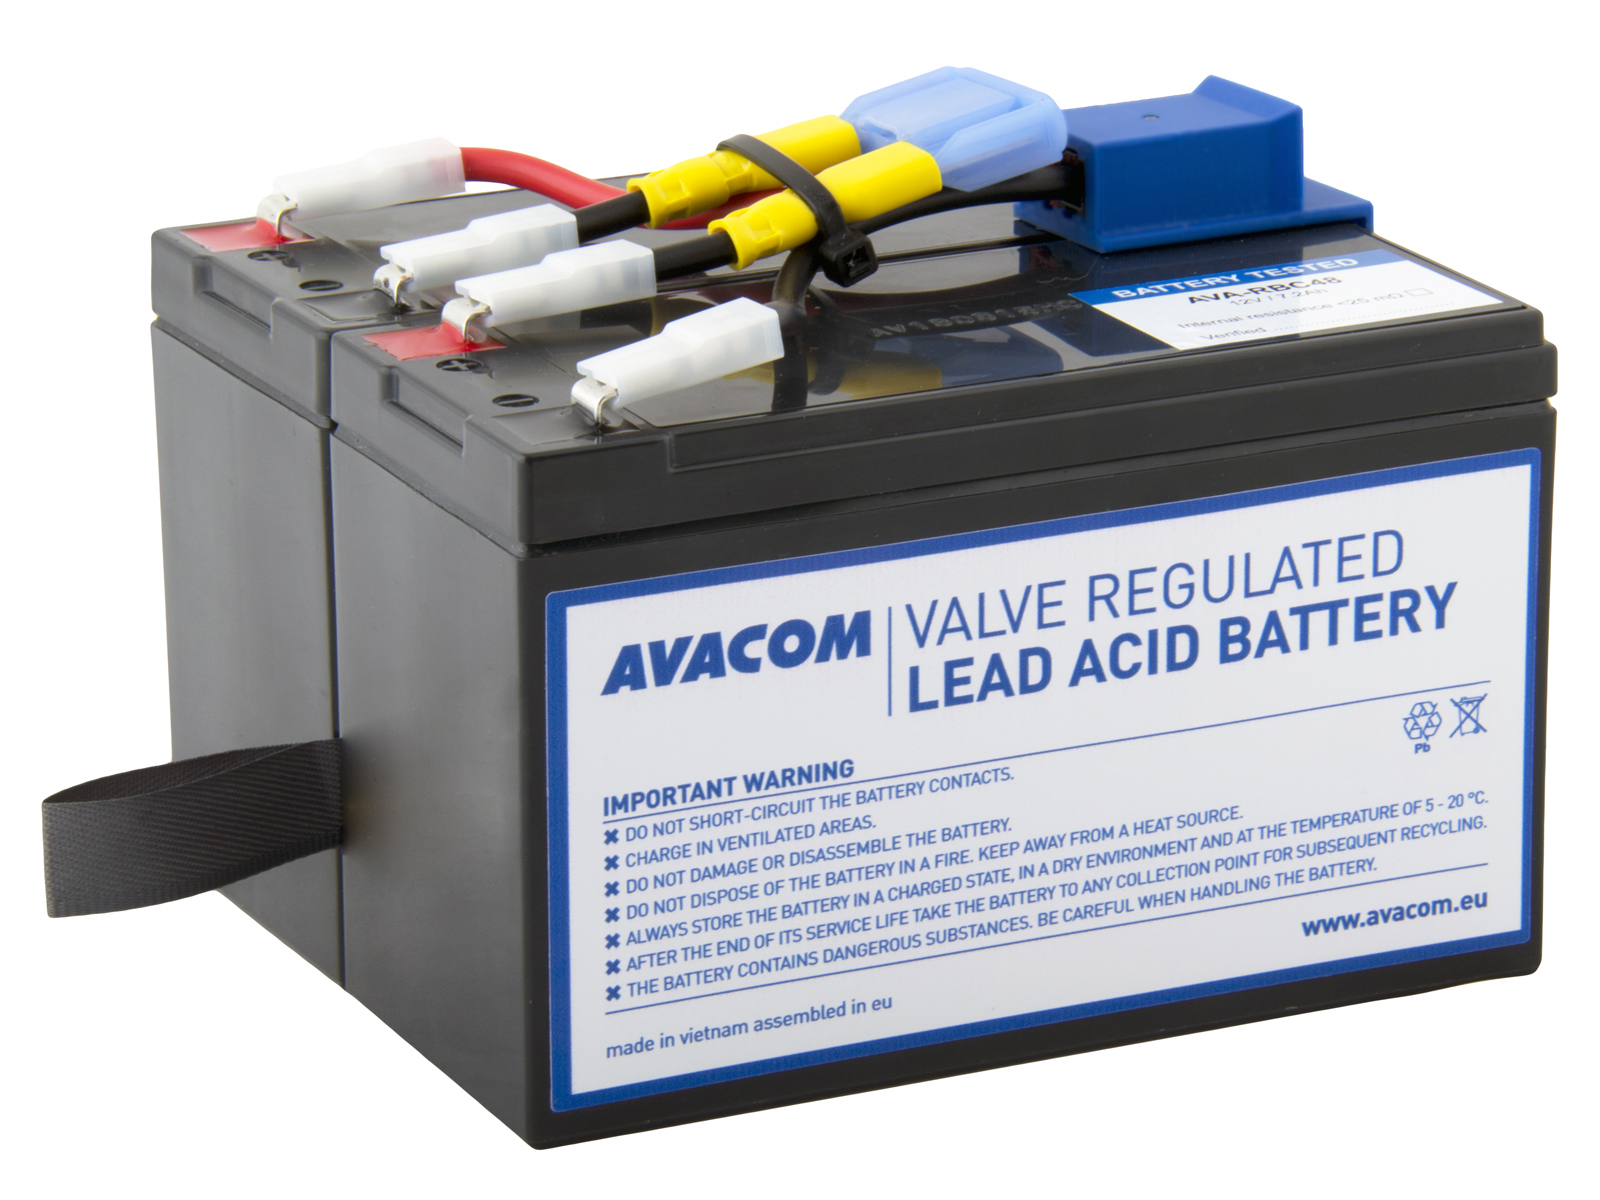 Baterie Avacom RBC48 bateriový kit - náhrada za APC - neoriginální